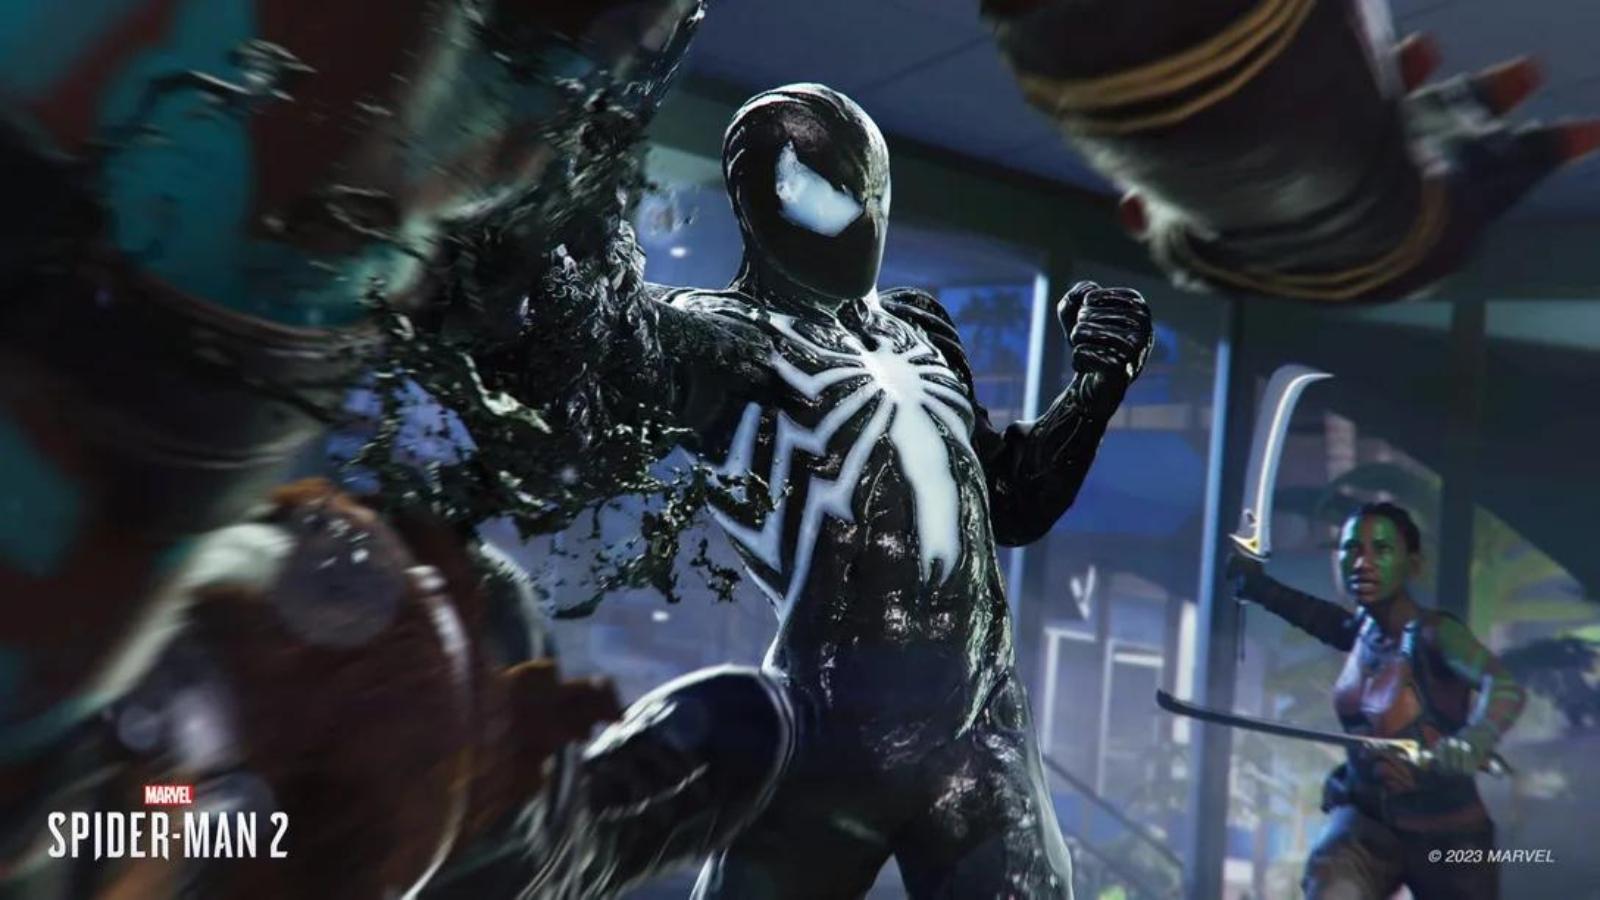 Spider-Man 2 symbiote suit